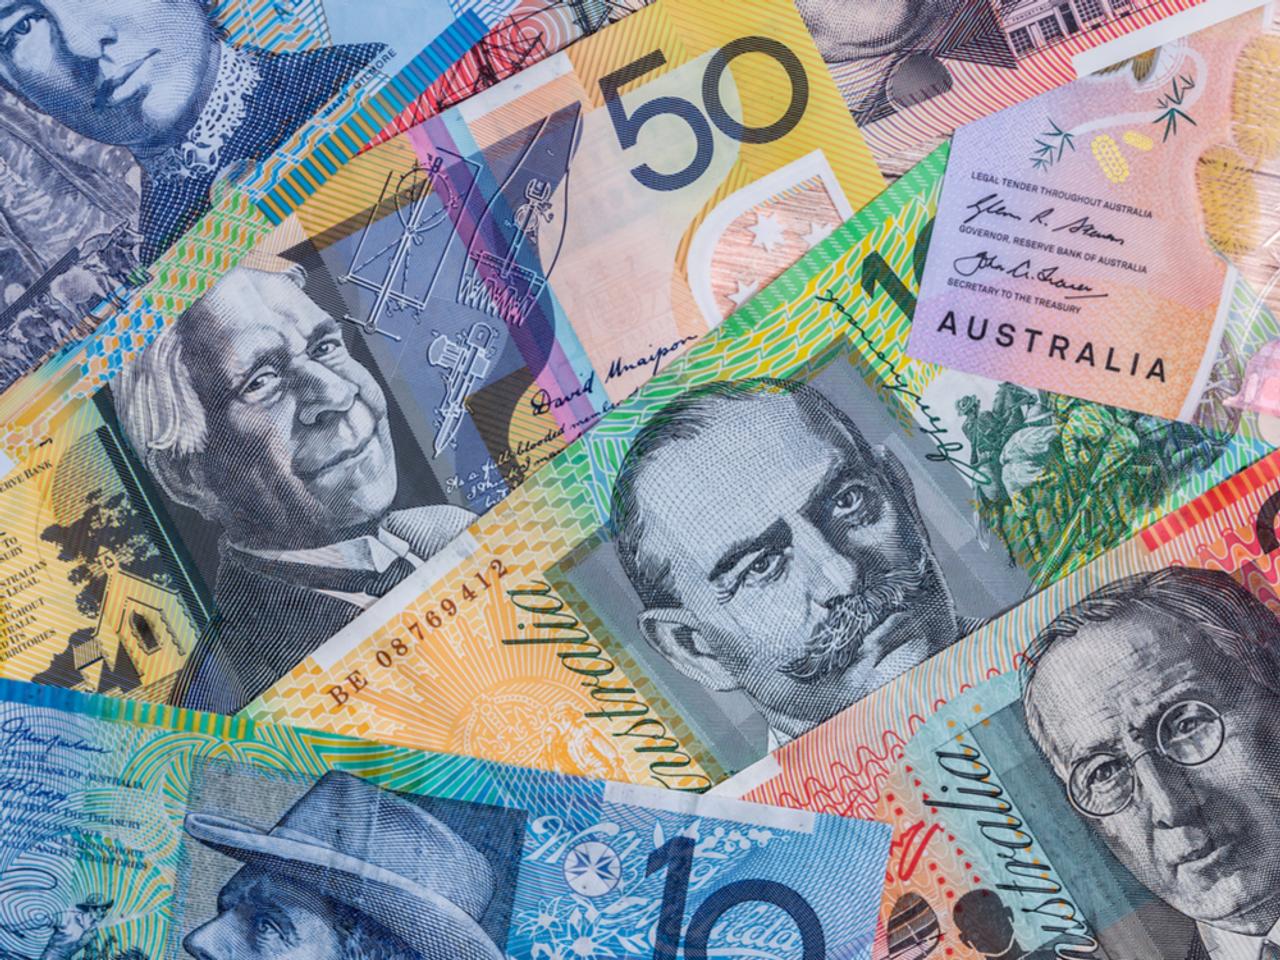 オーストラリア、2019年7月から82万円以上は現金決済禁止に